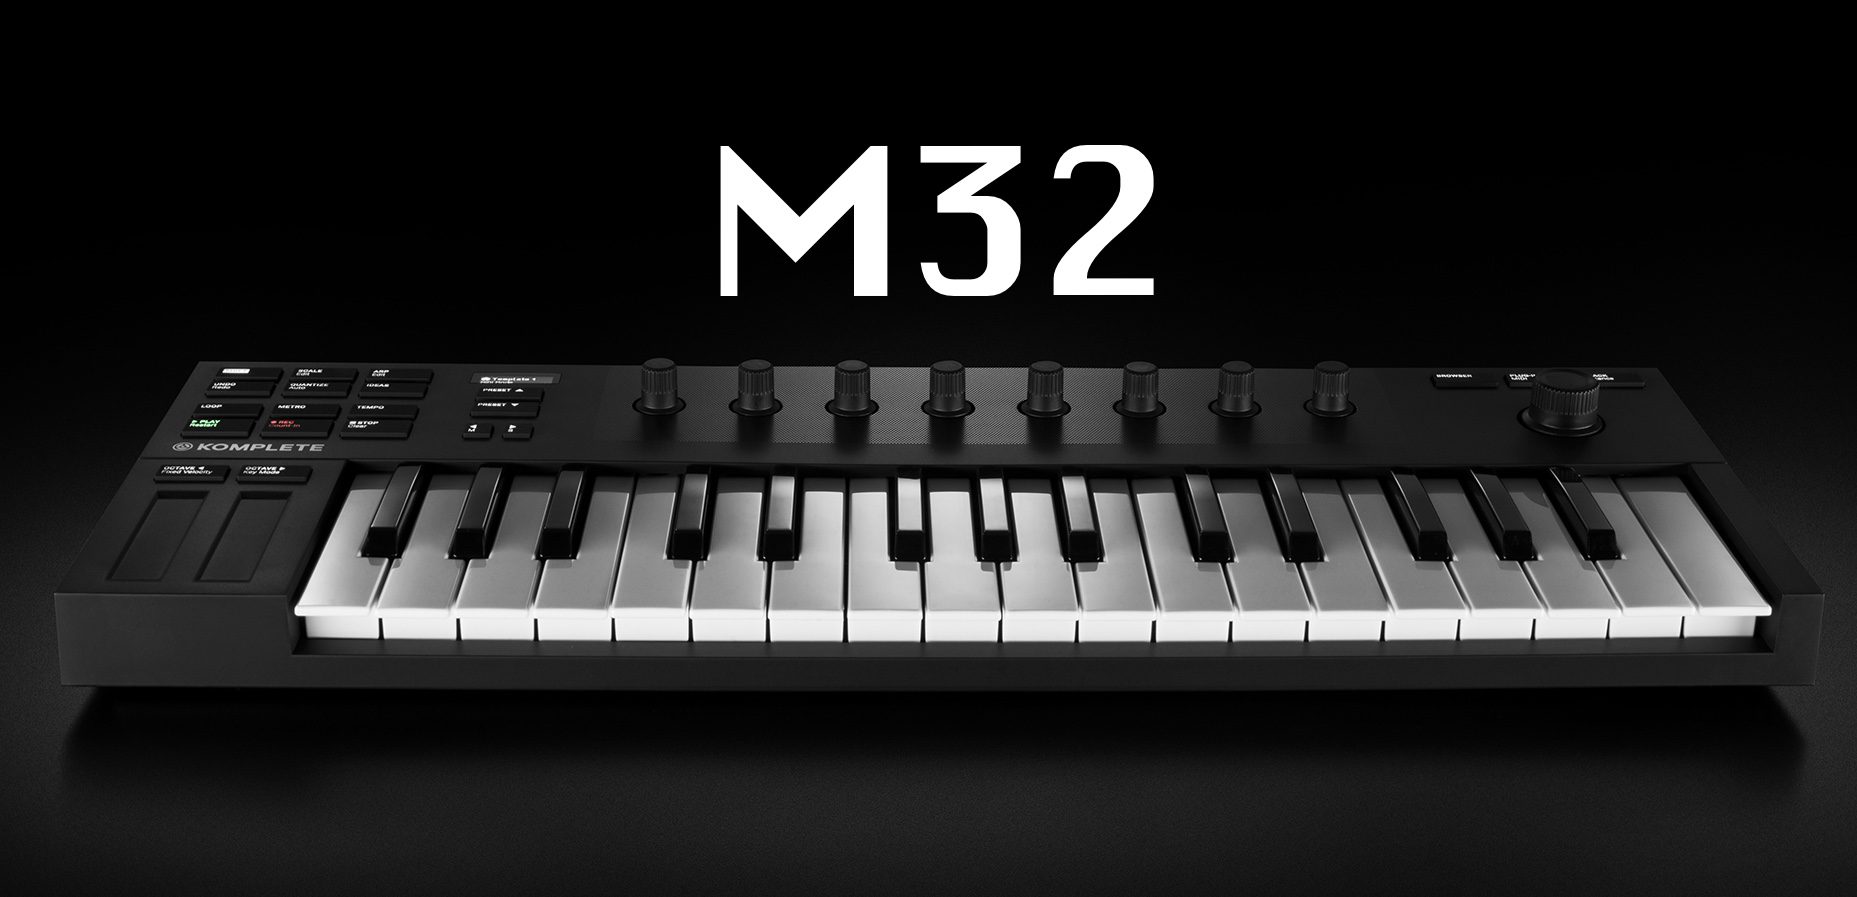 komplete kontrol m32 fl studio 20